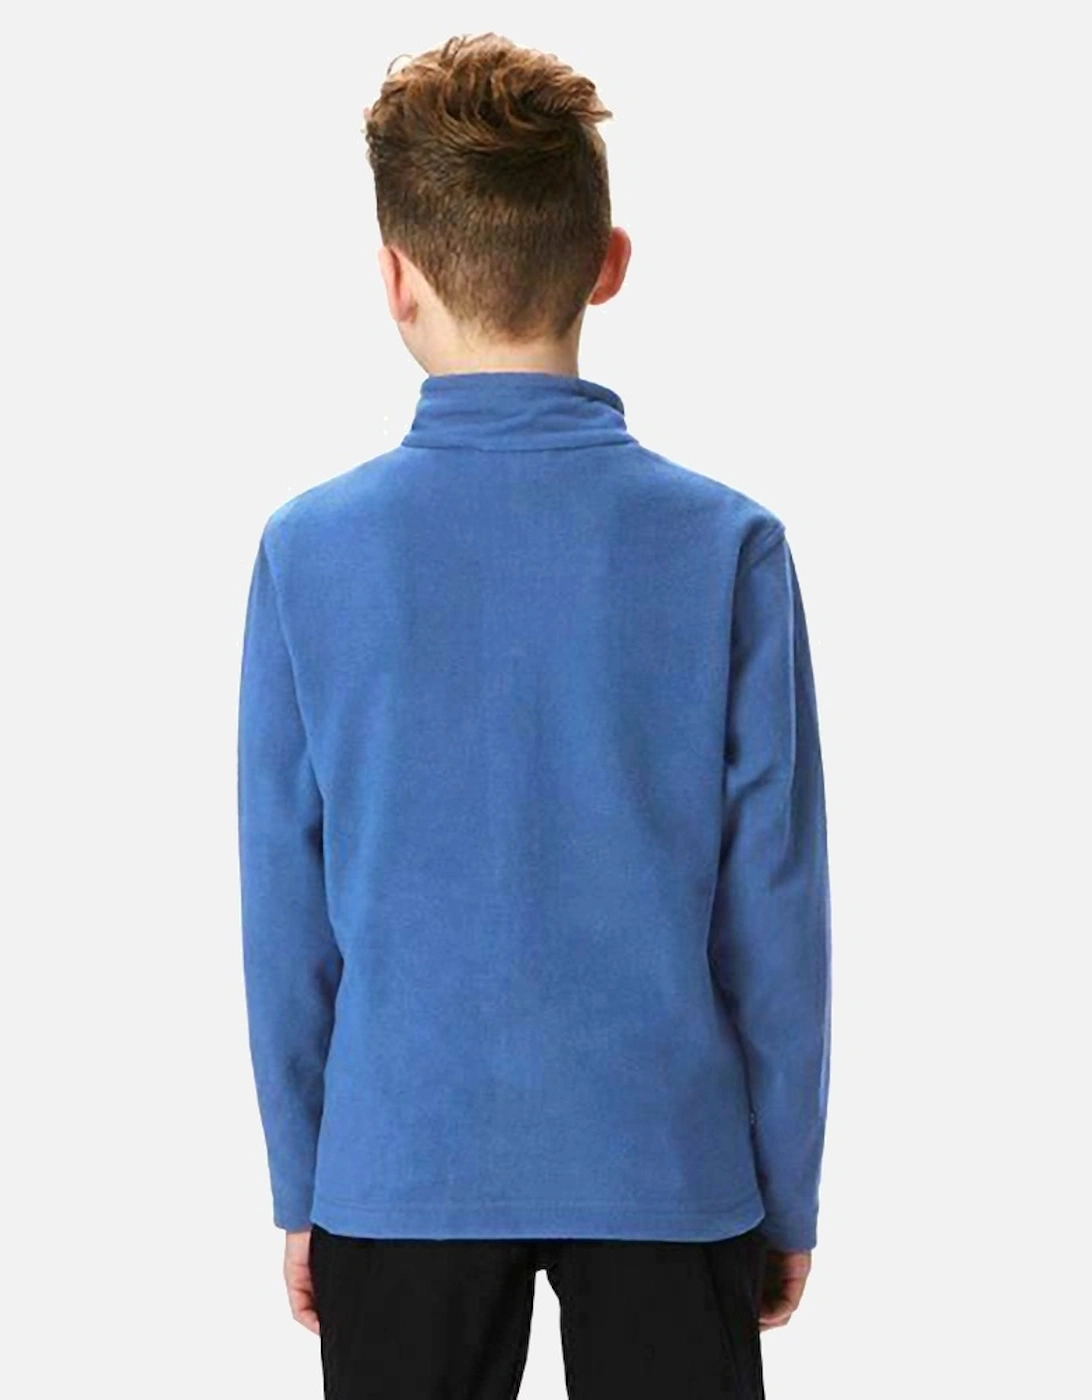 Childrens/Kids Brigade II Micro Fleece Jacket